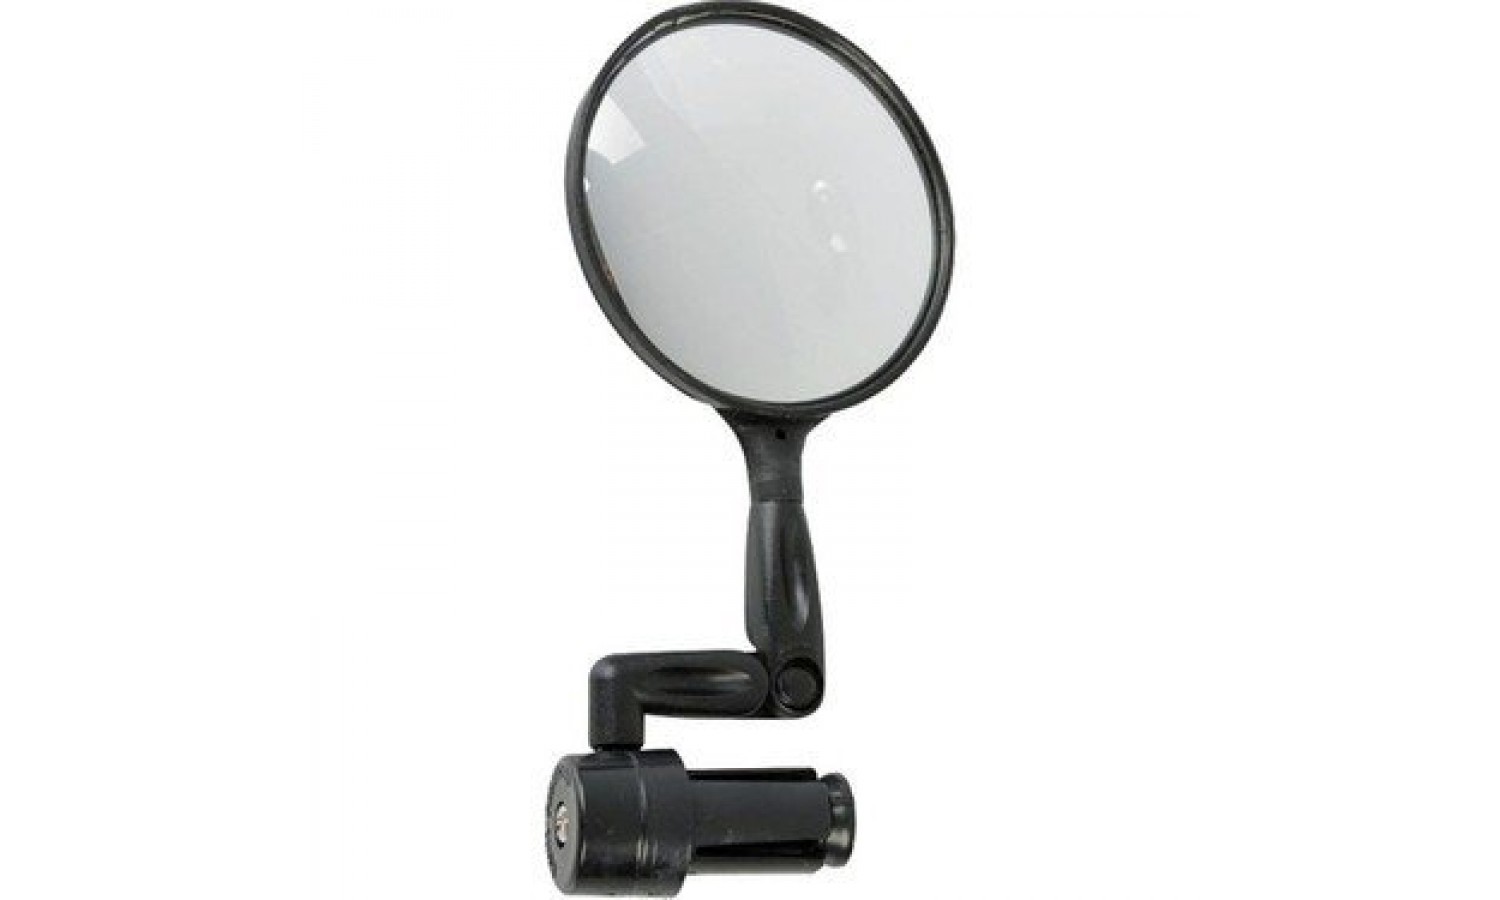 Gidon Aynası Siyah Mr-k01 47mm Optik Lens